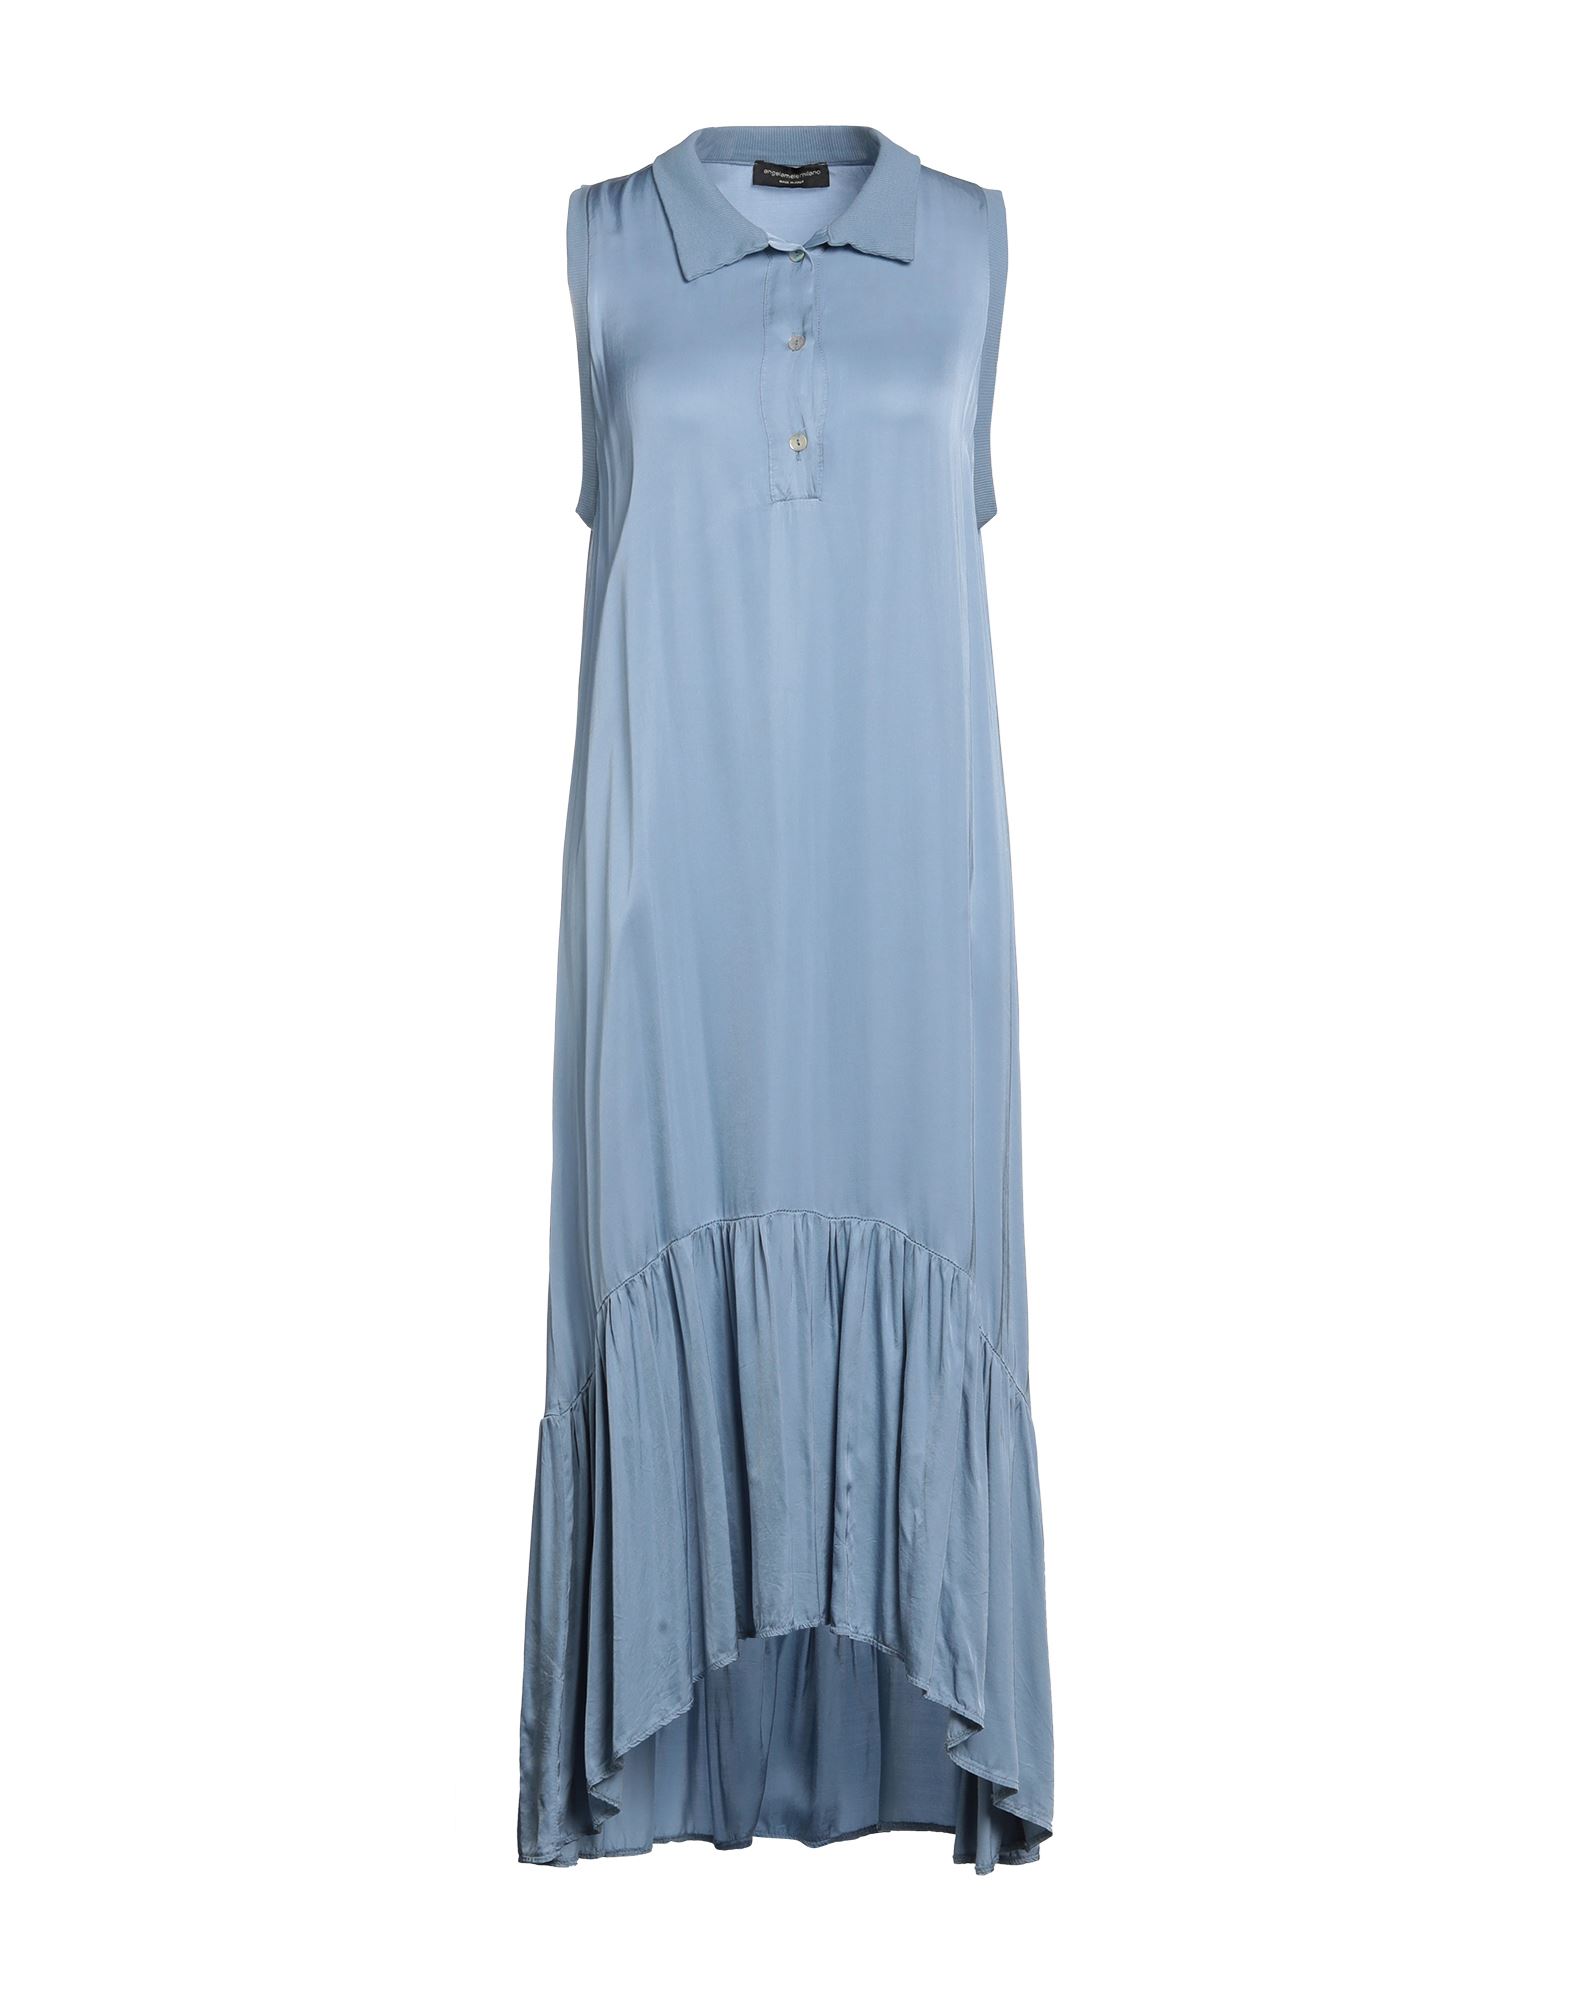 Angela Mele Milano Woman Midi Dress Pastel Blue Size Onesize Viscose